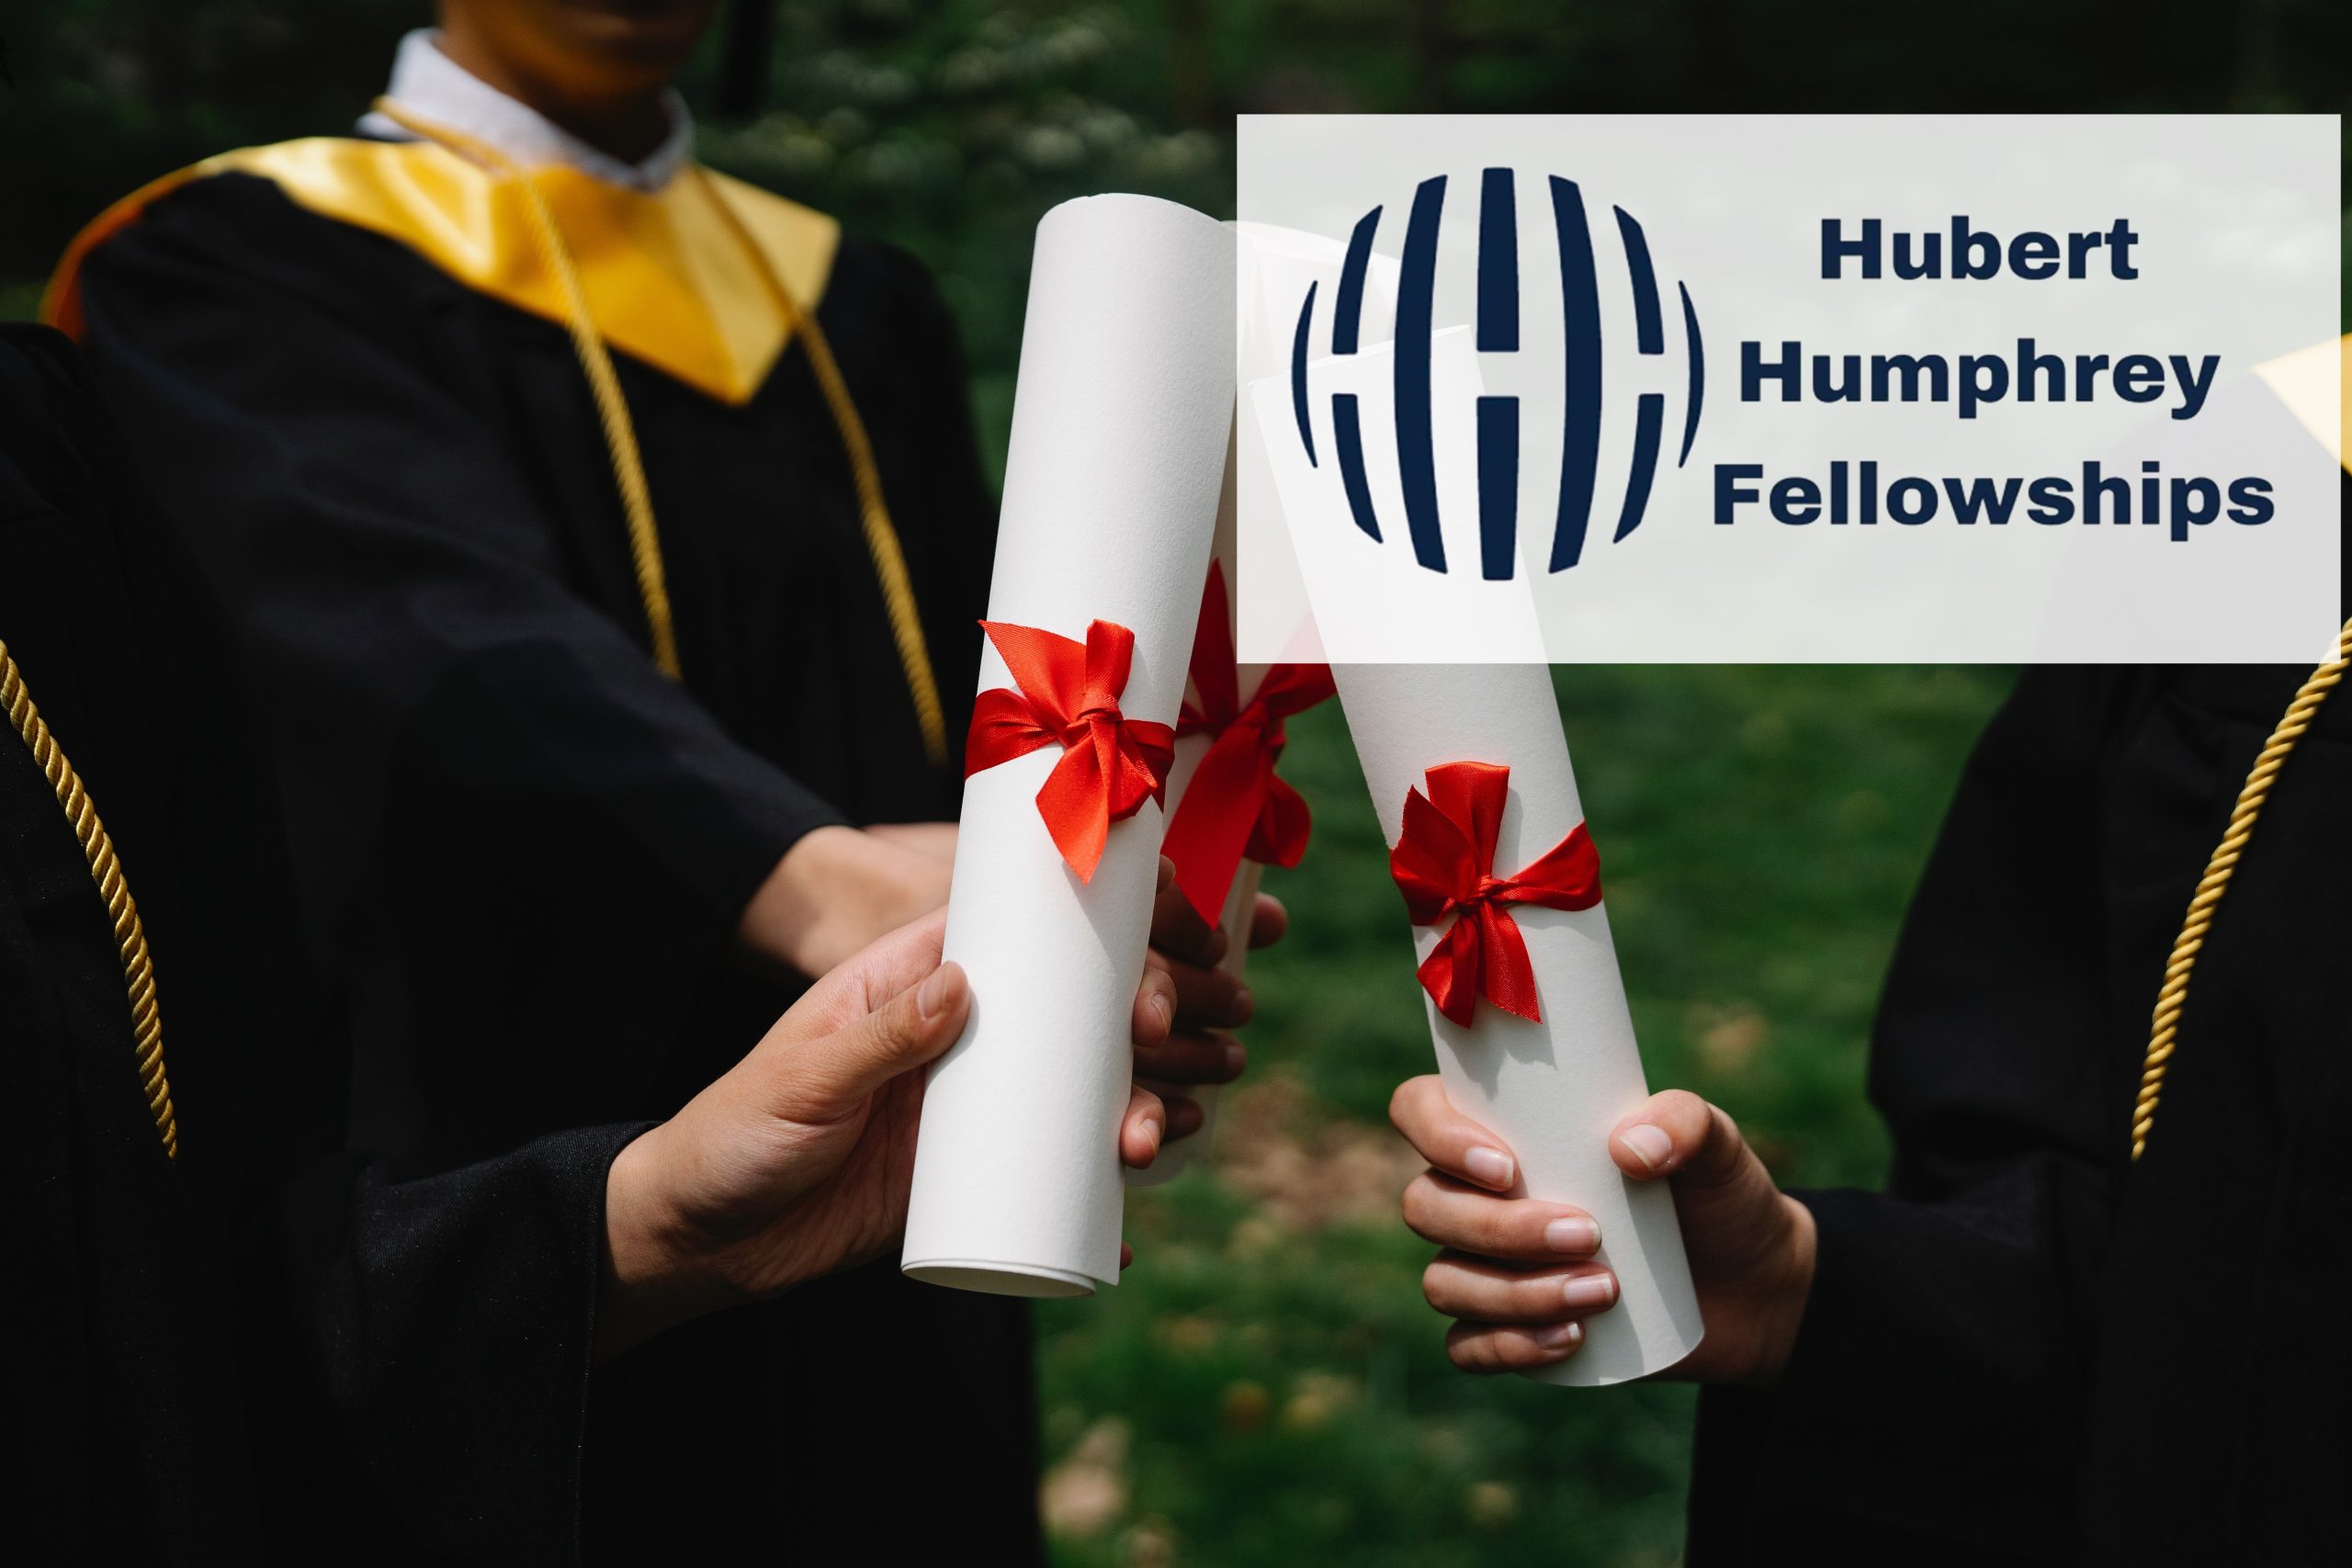 Hubert Humphrey Fellowships Program